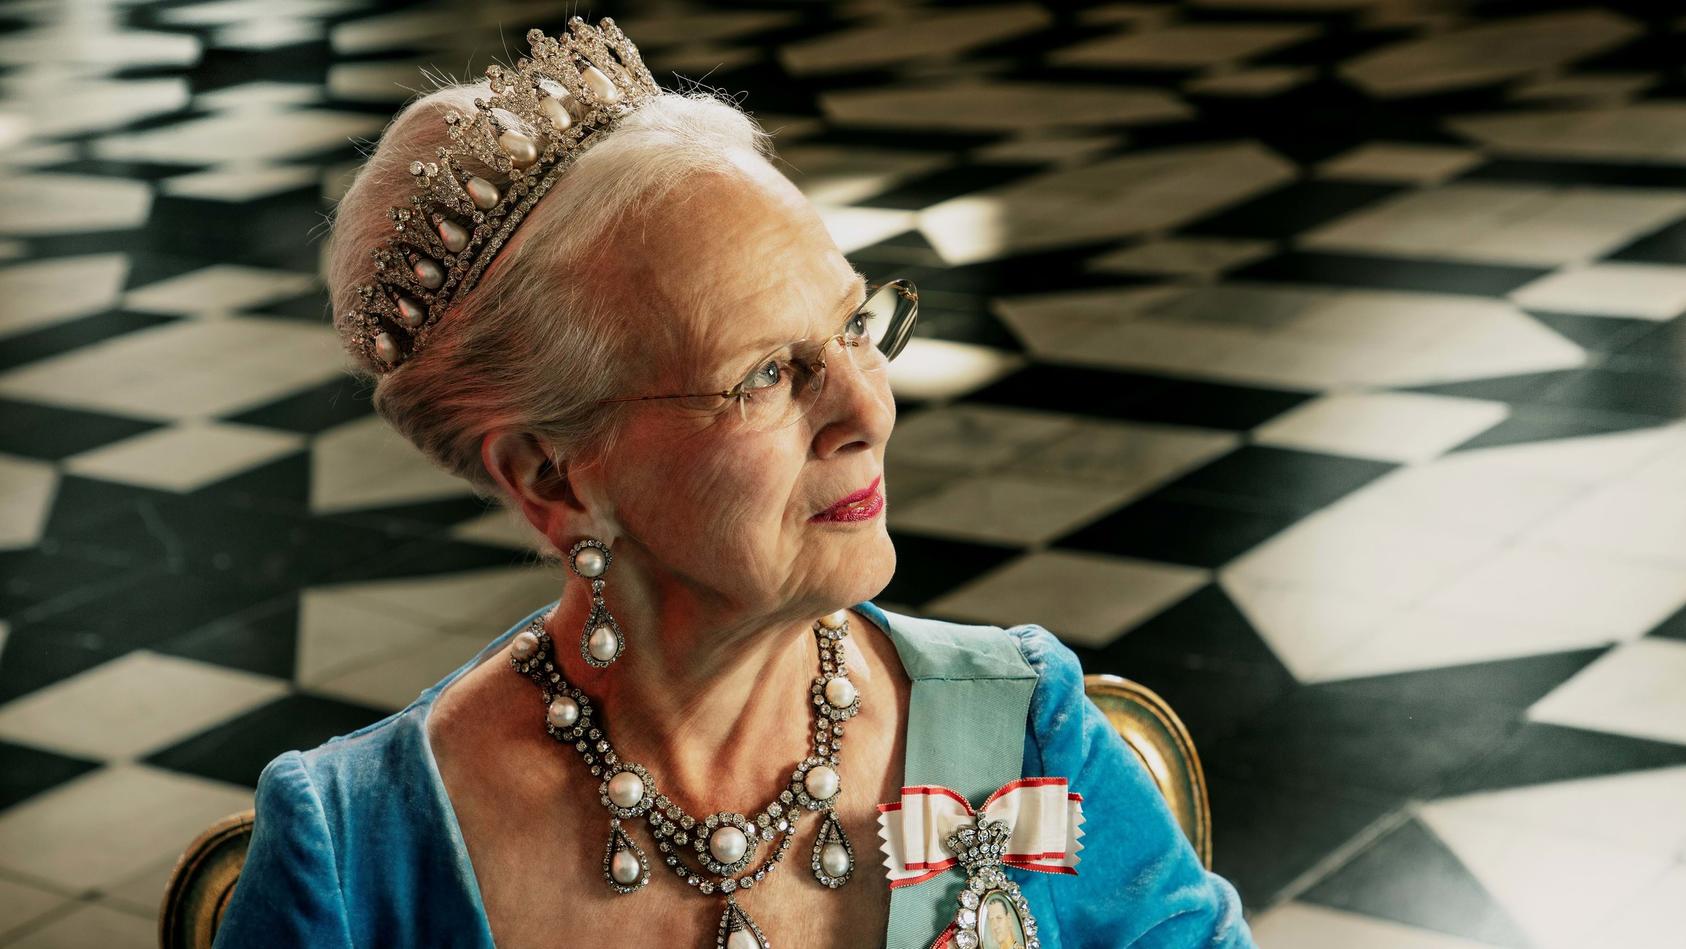 2022, Dänemark, Kopenhagen: Offizielles Porträt von Königin Margrethe II. von Dänemark, das anlässlich ihres 50. Thronjubiläums